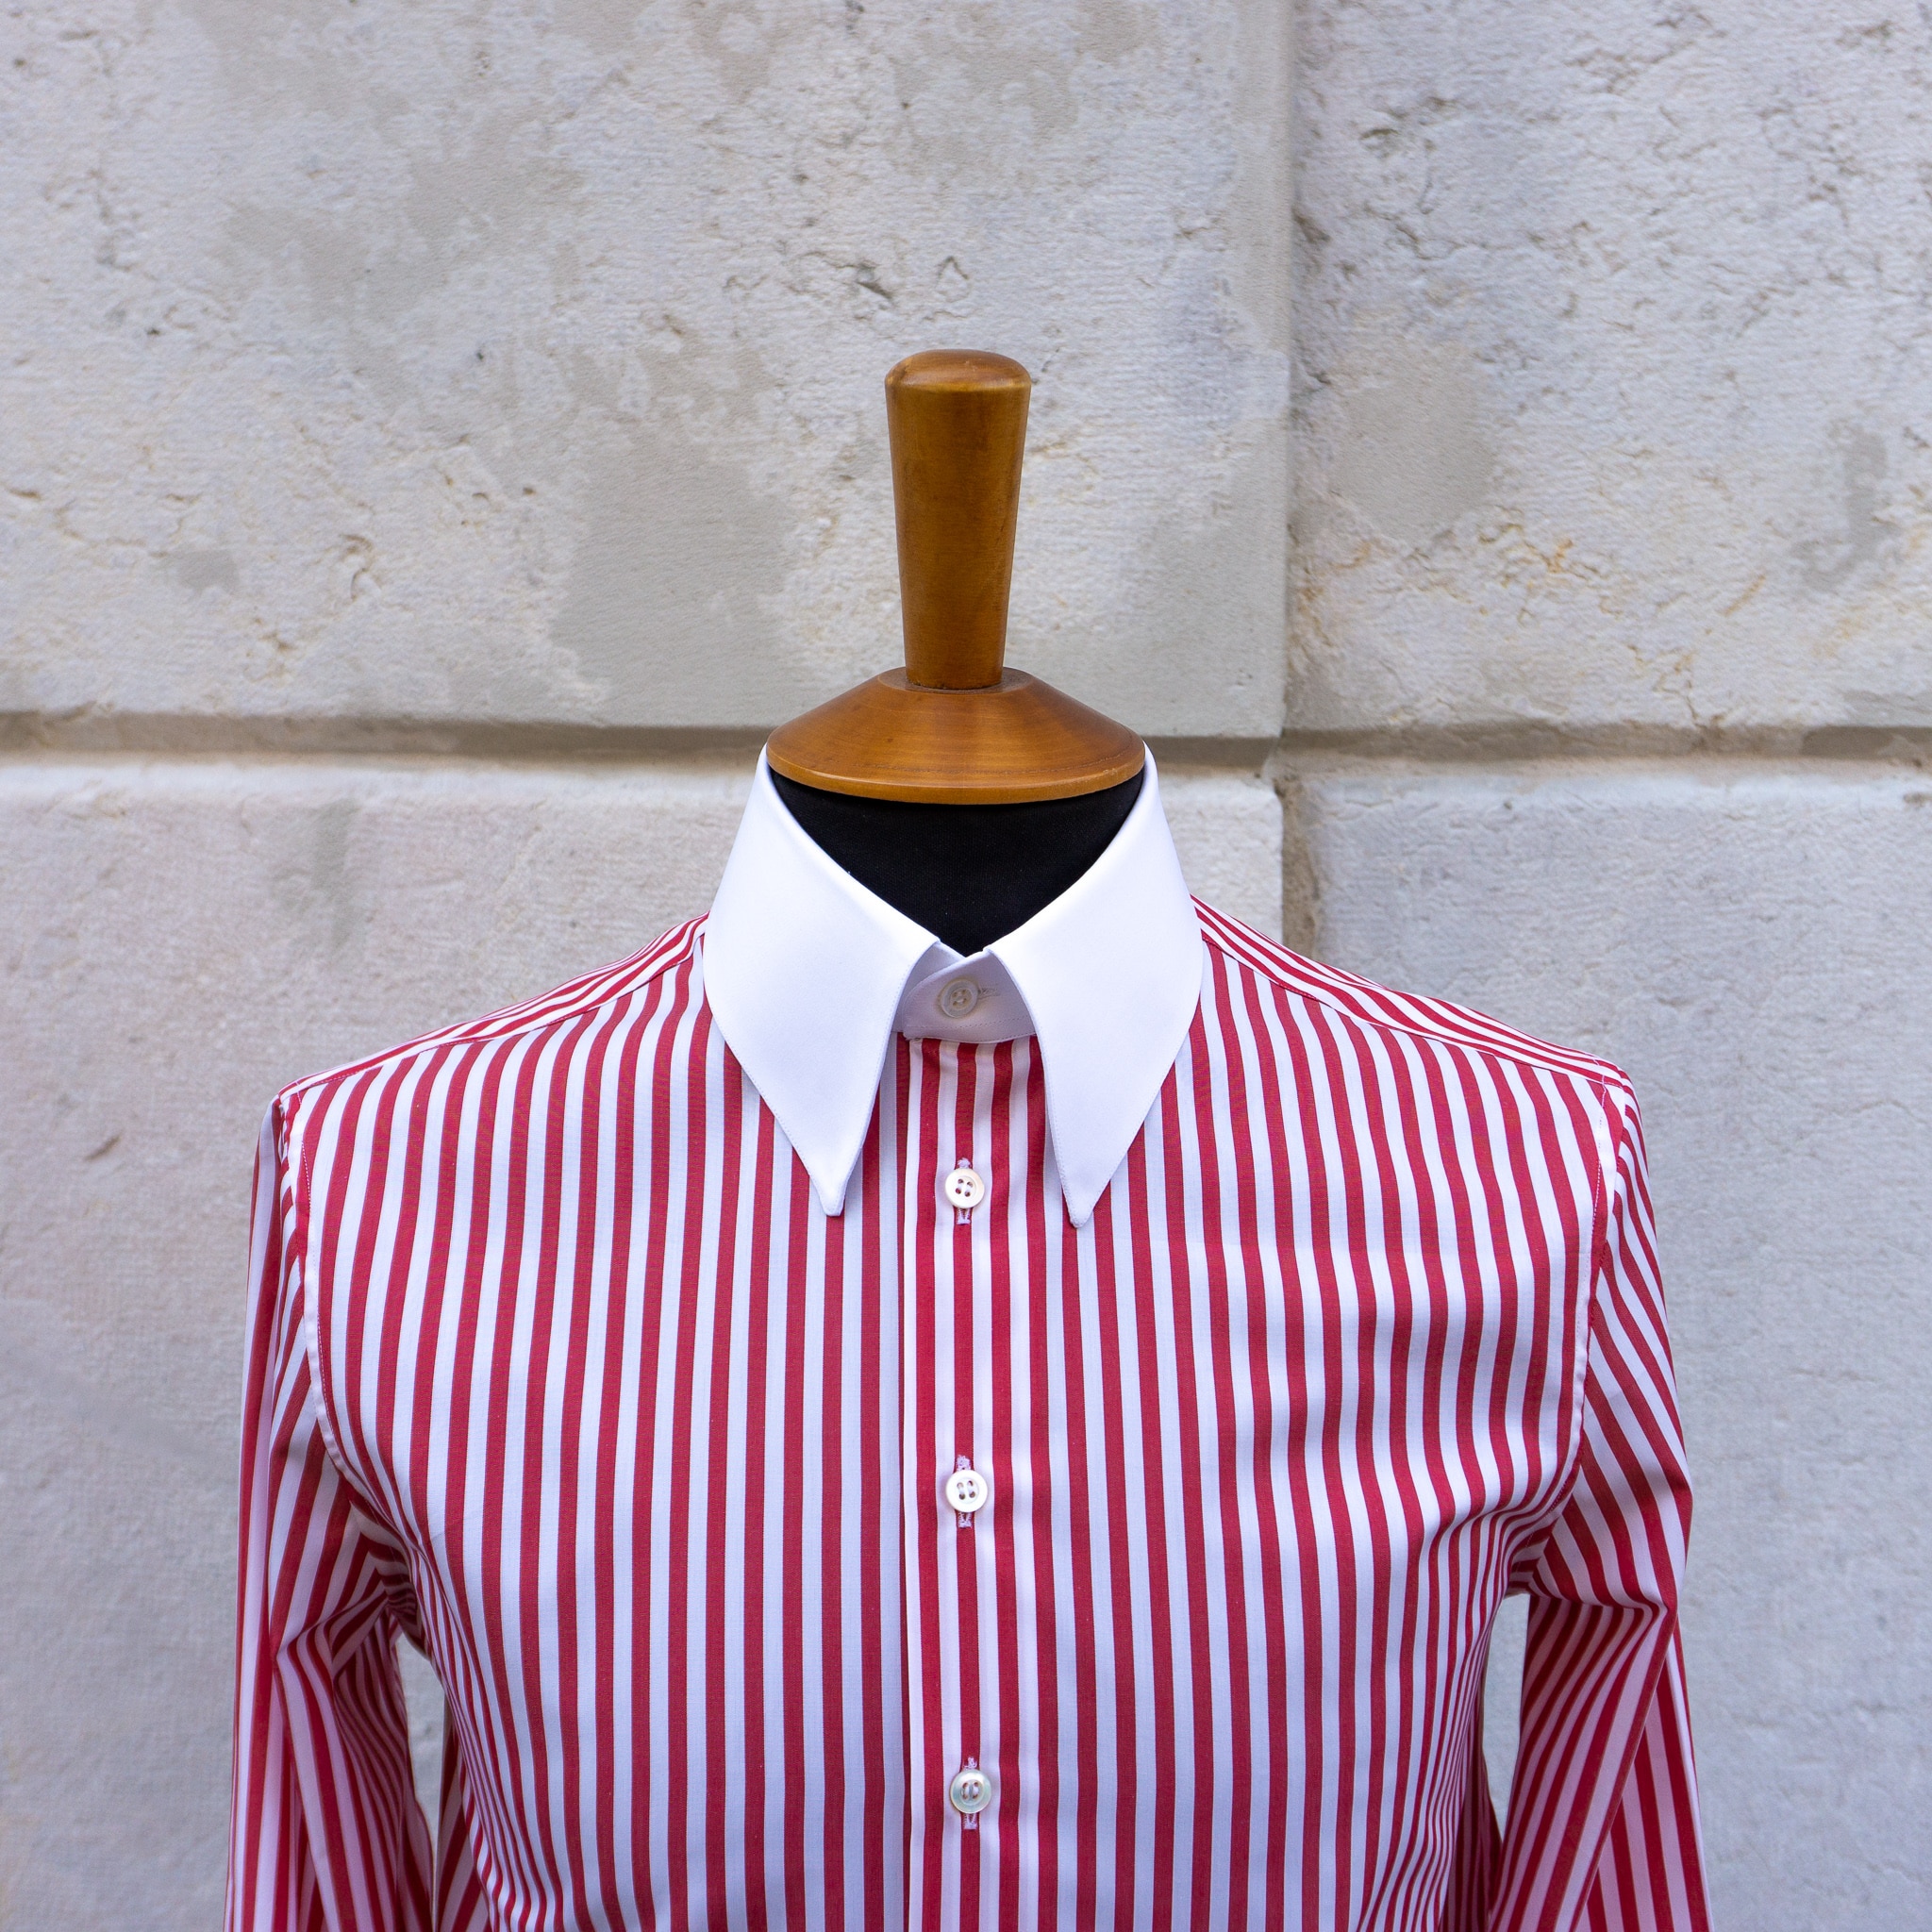 Buste Chemise pour homme | Chemise à col et poignets contrastés - Winchester shirt | Chemise sur mesure - Bespoke shirt | Revenga Chemisiers Genevois - Bespoke shirtmakers